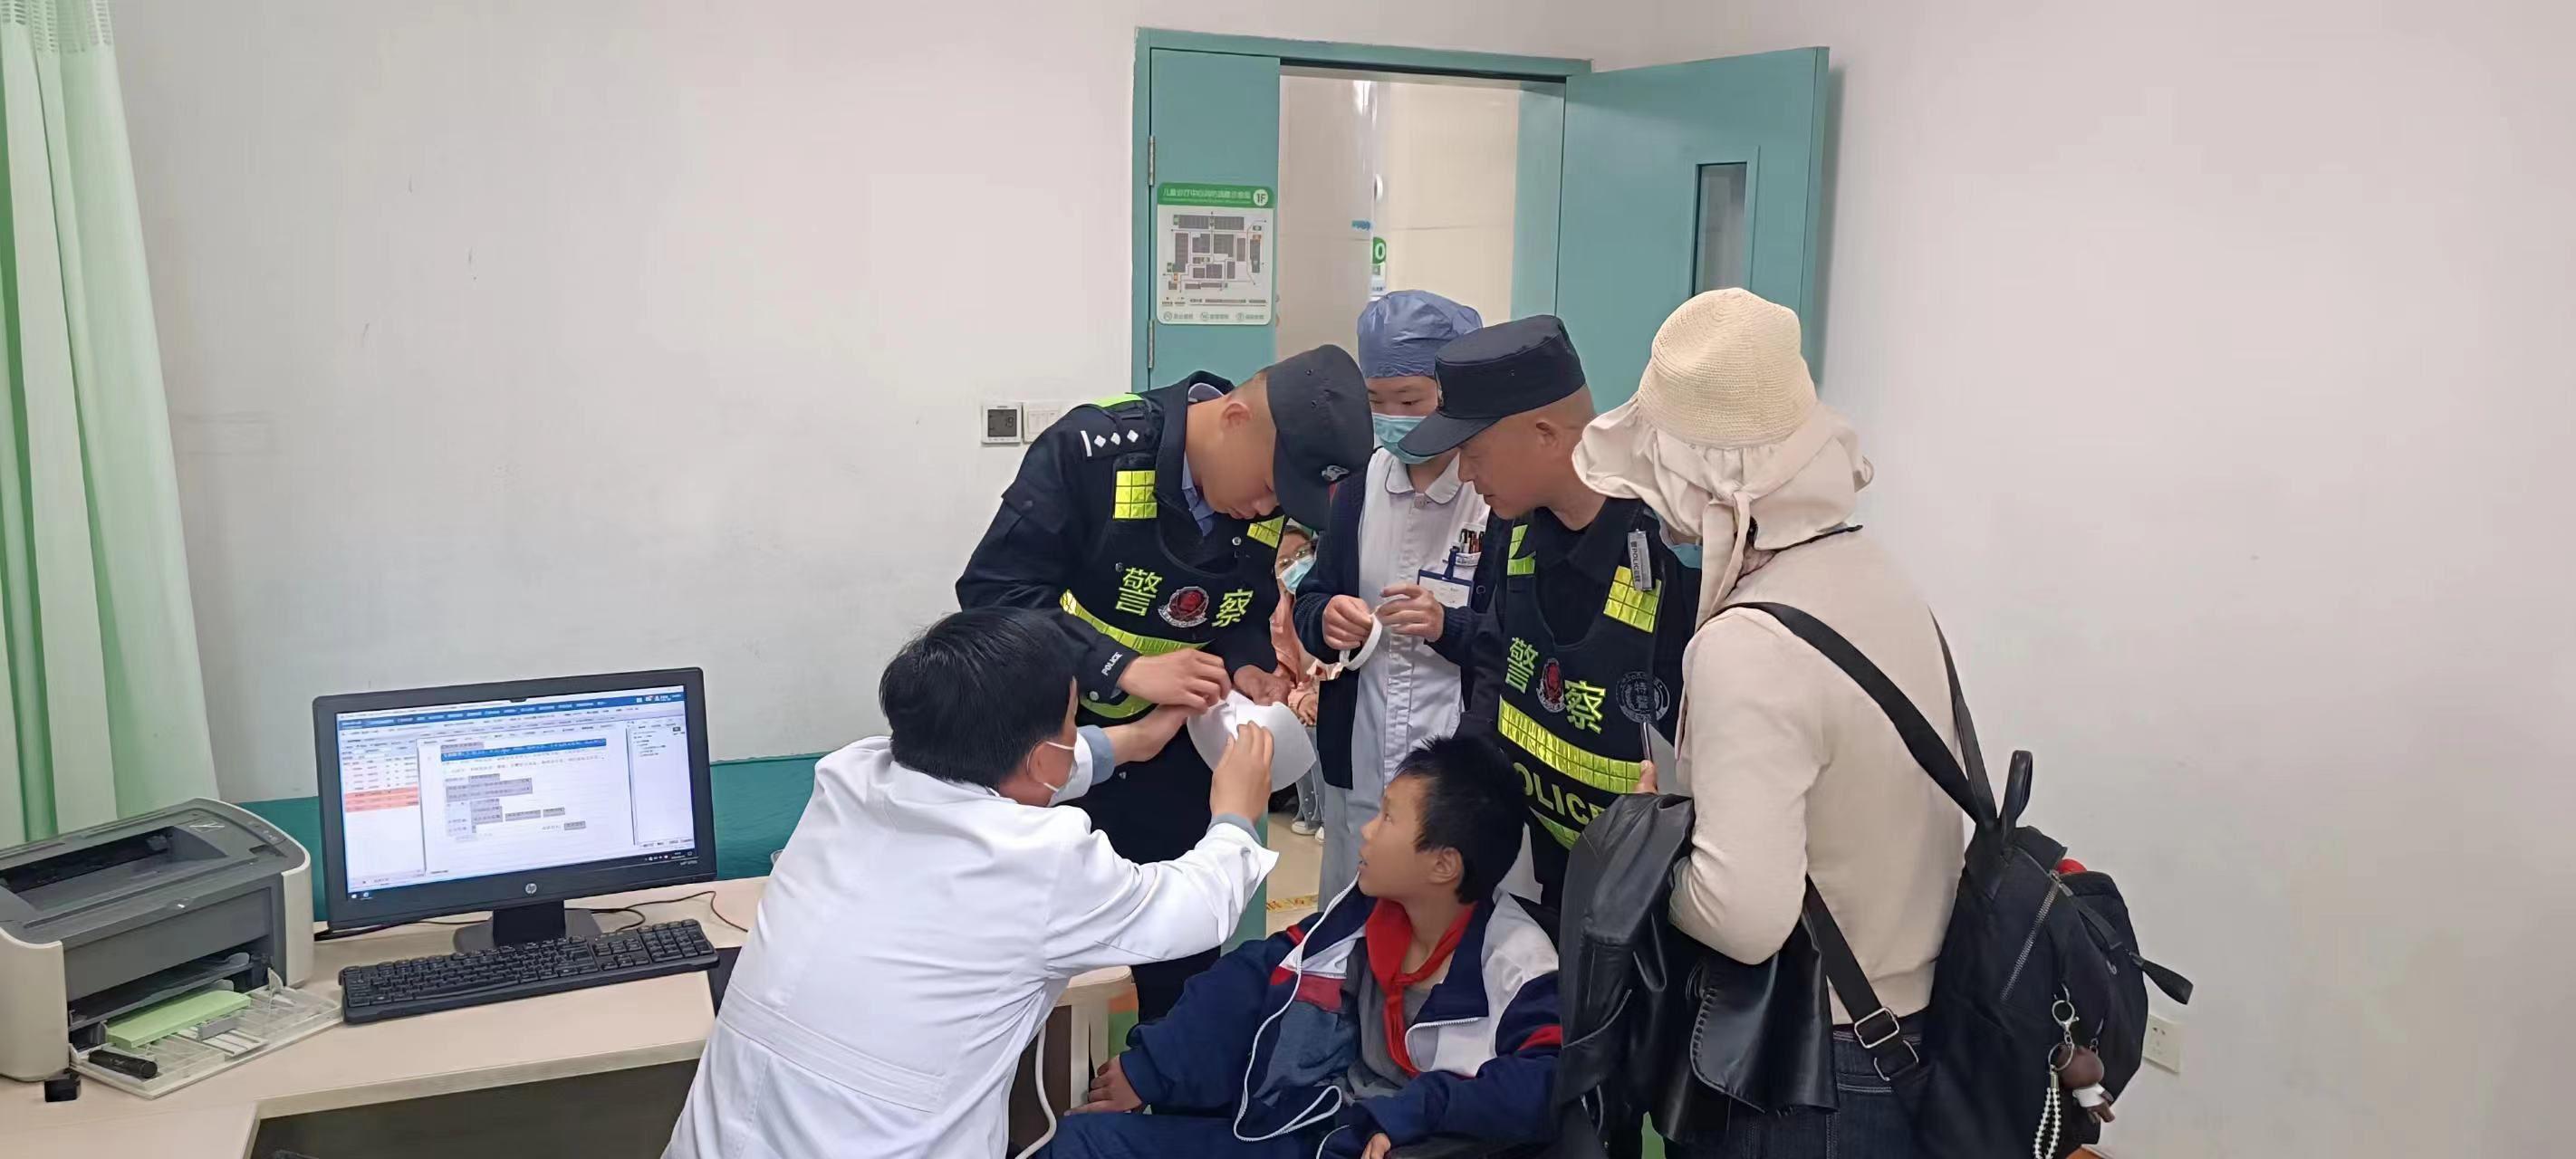 徐州：学生研学途中突发急症 民警伸援手及时送医救治